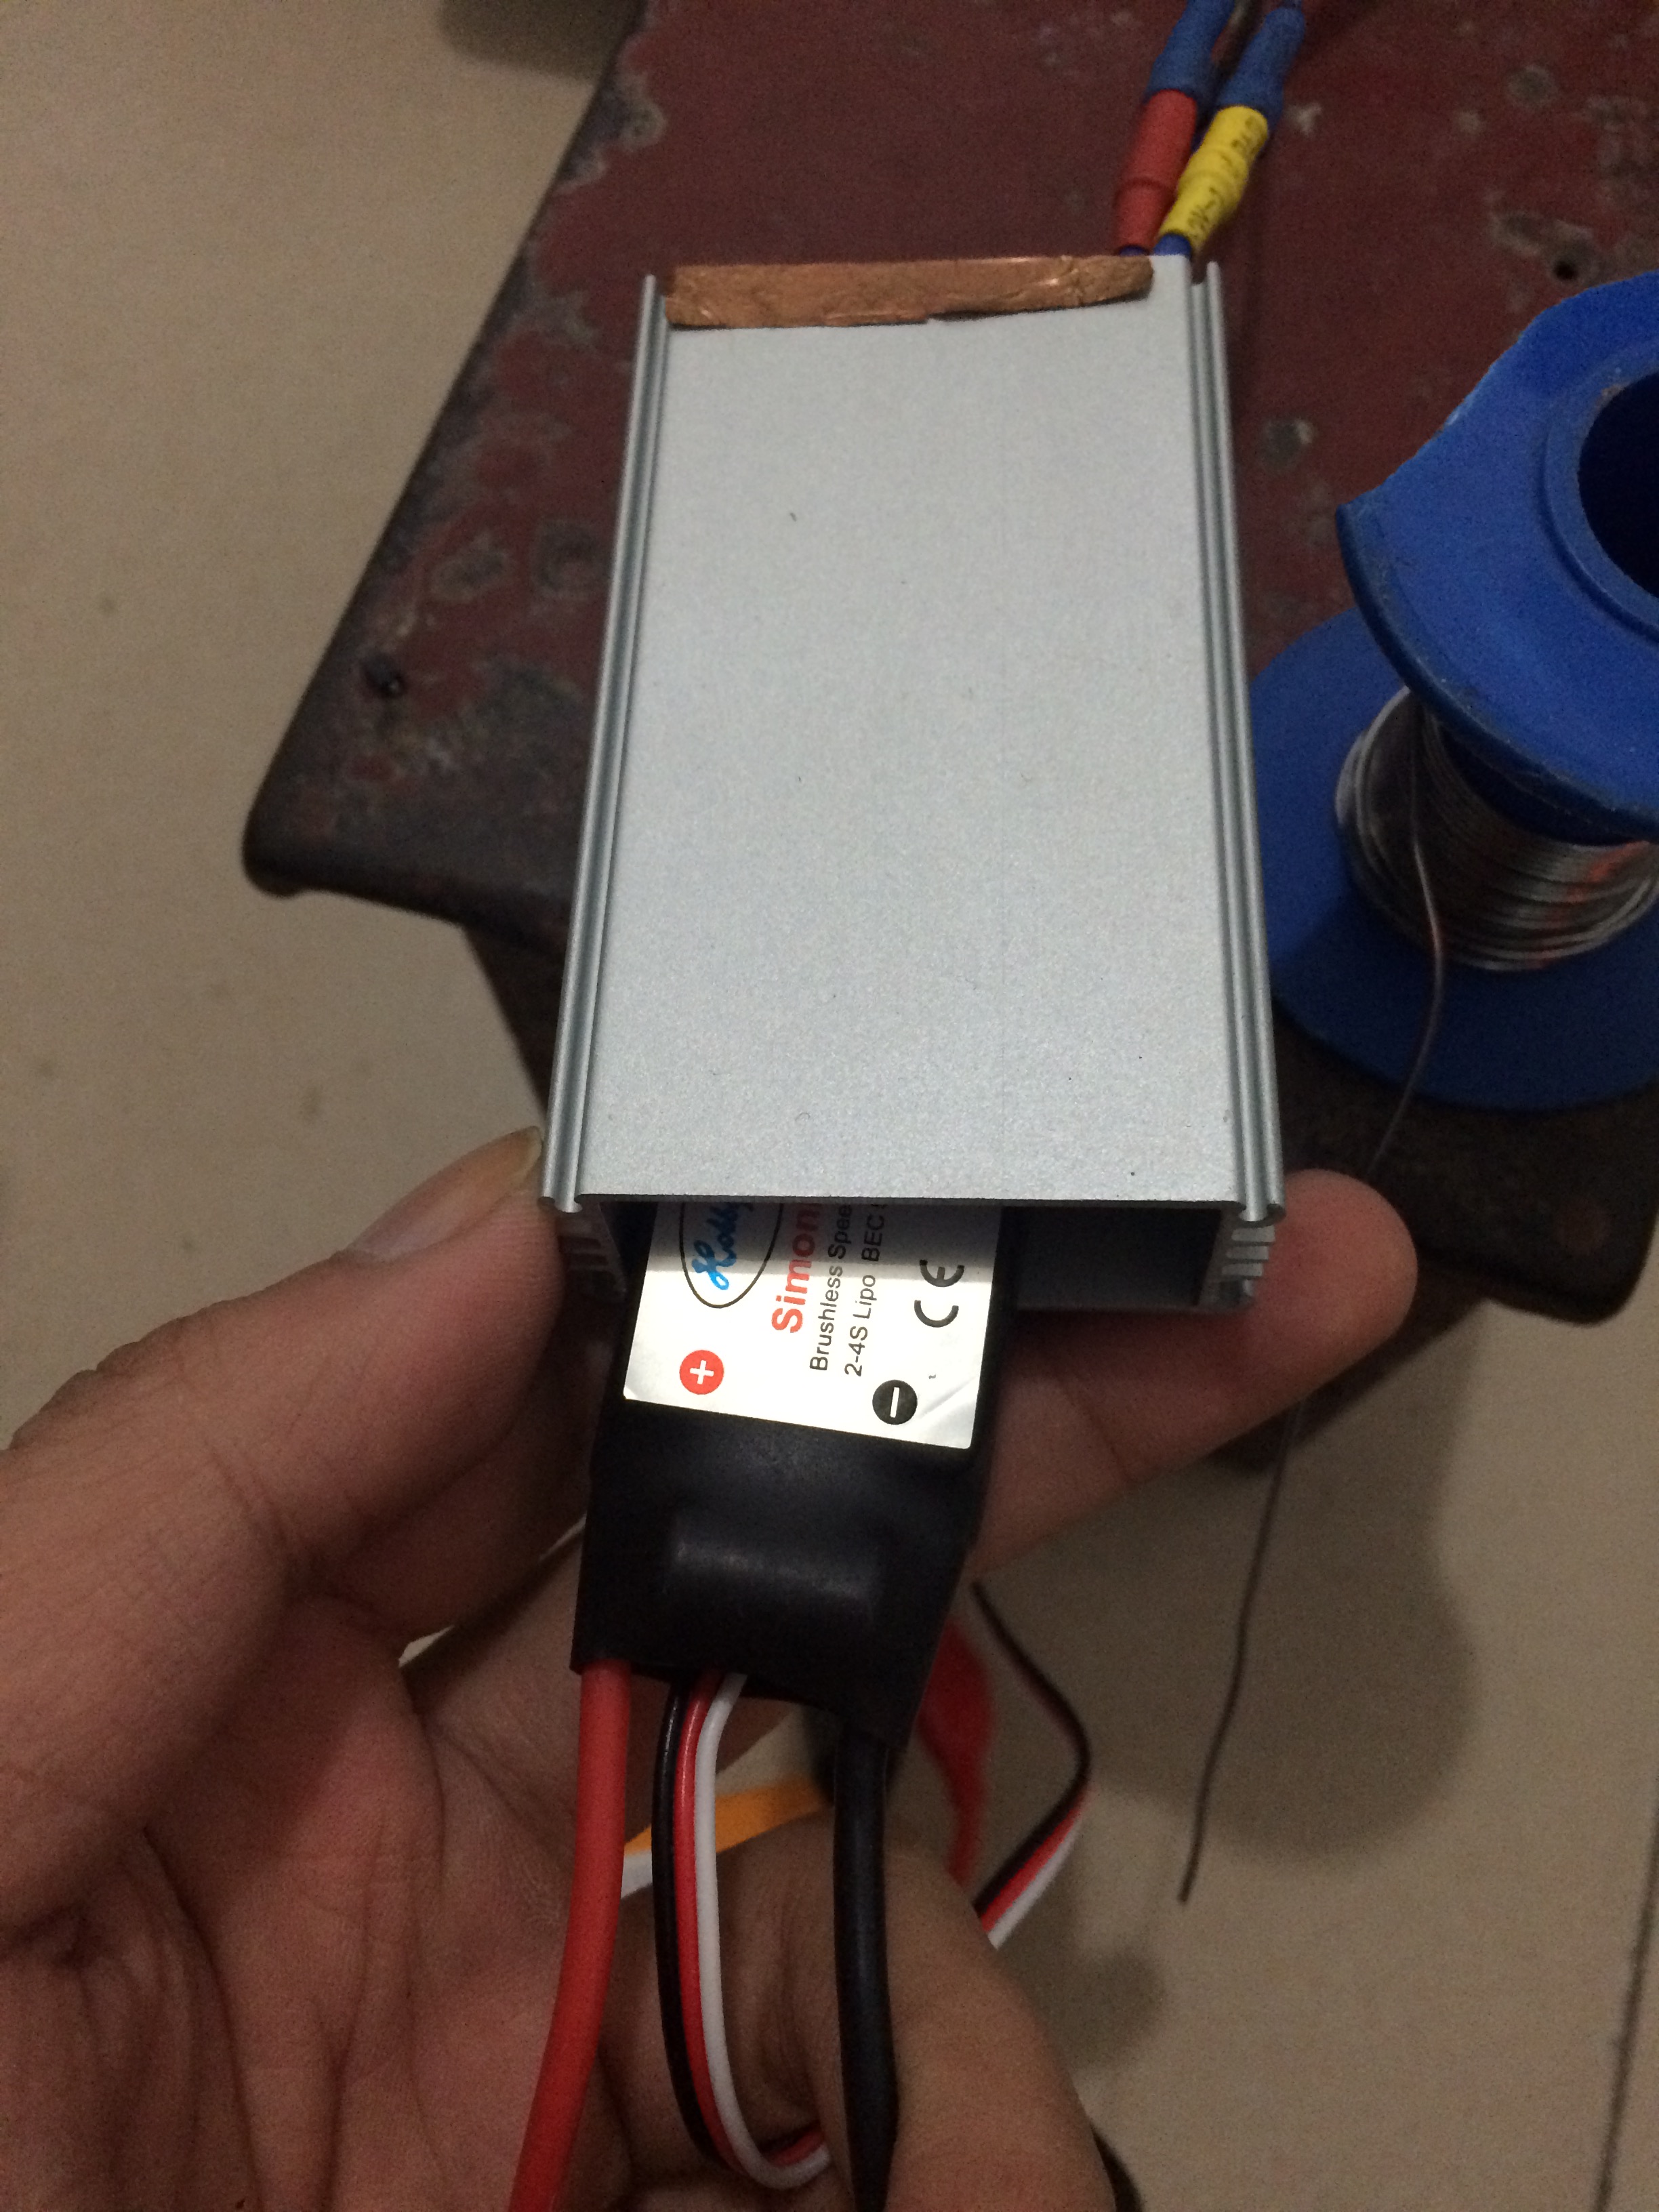 关于飞控或者电调使用金属胶带包裹降低干扰的验证（加... 示波器,朋友,胶带,金属,电池 作者:useisbb 5669 